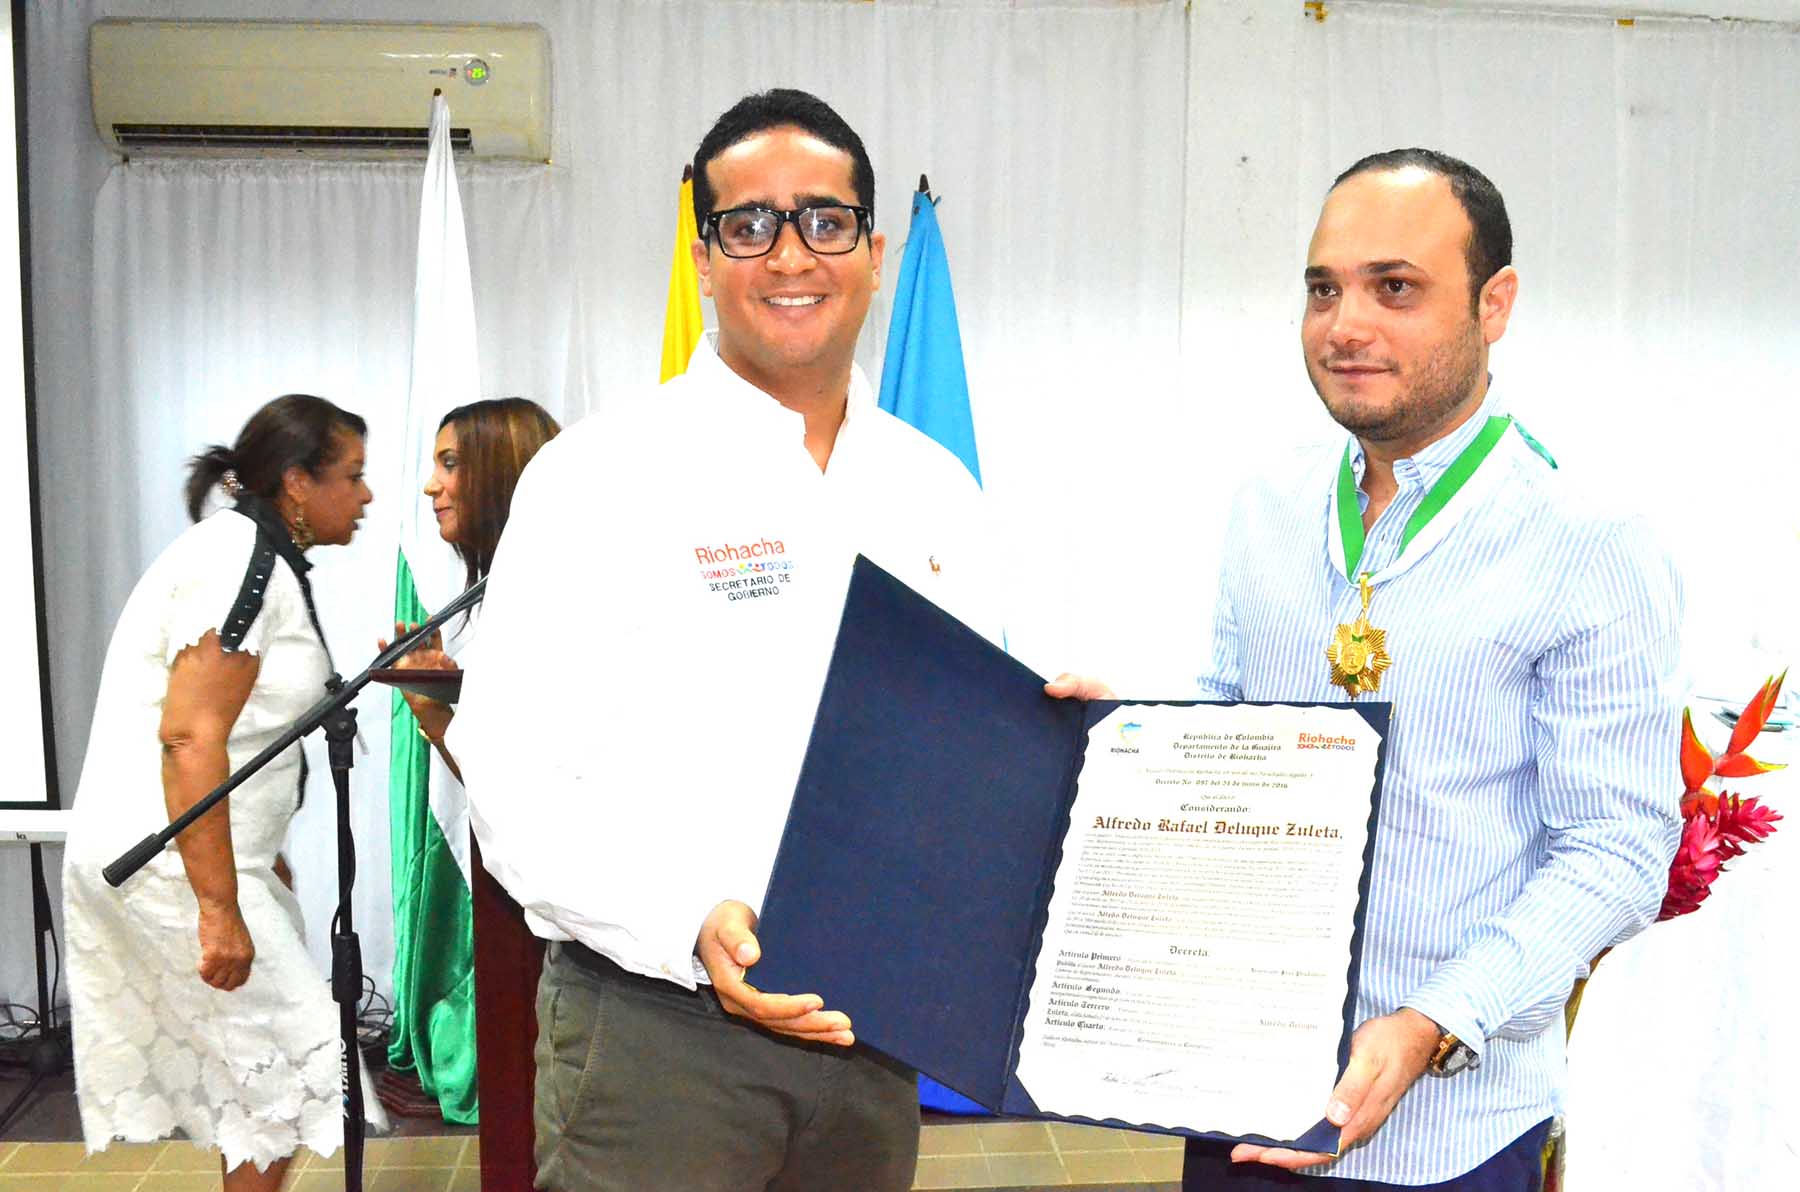 El Distrito de Riohacha, entregó la medalla Jose Prudencio Padilla, hizo la entrega Jairo Aguilar Deluque.